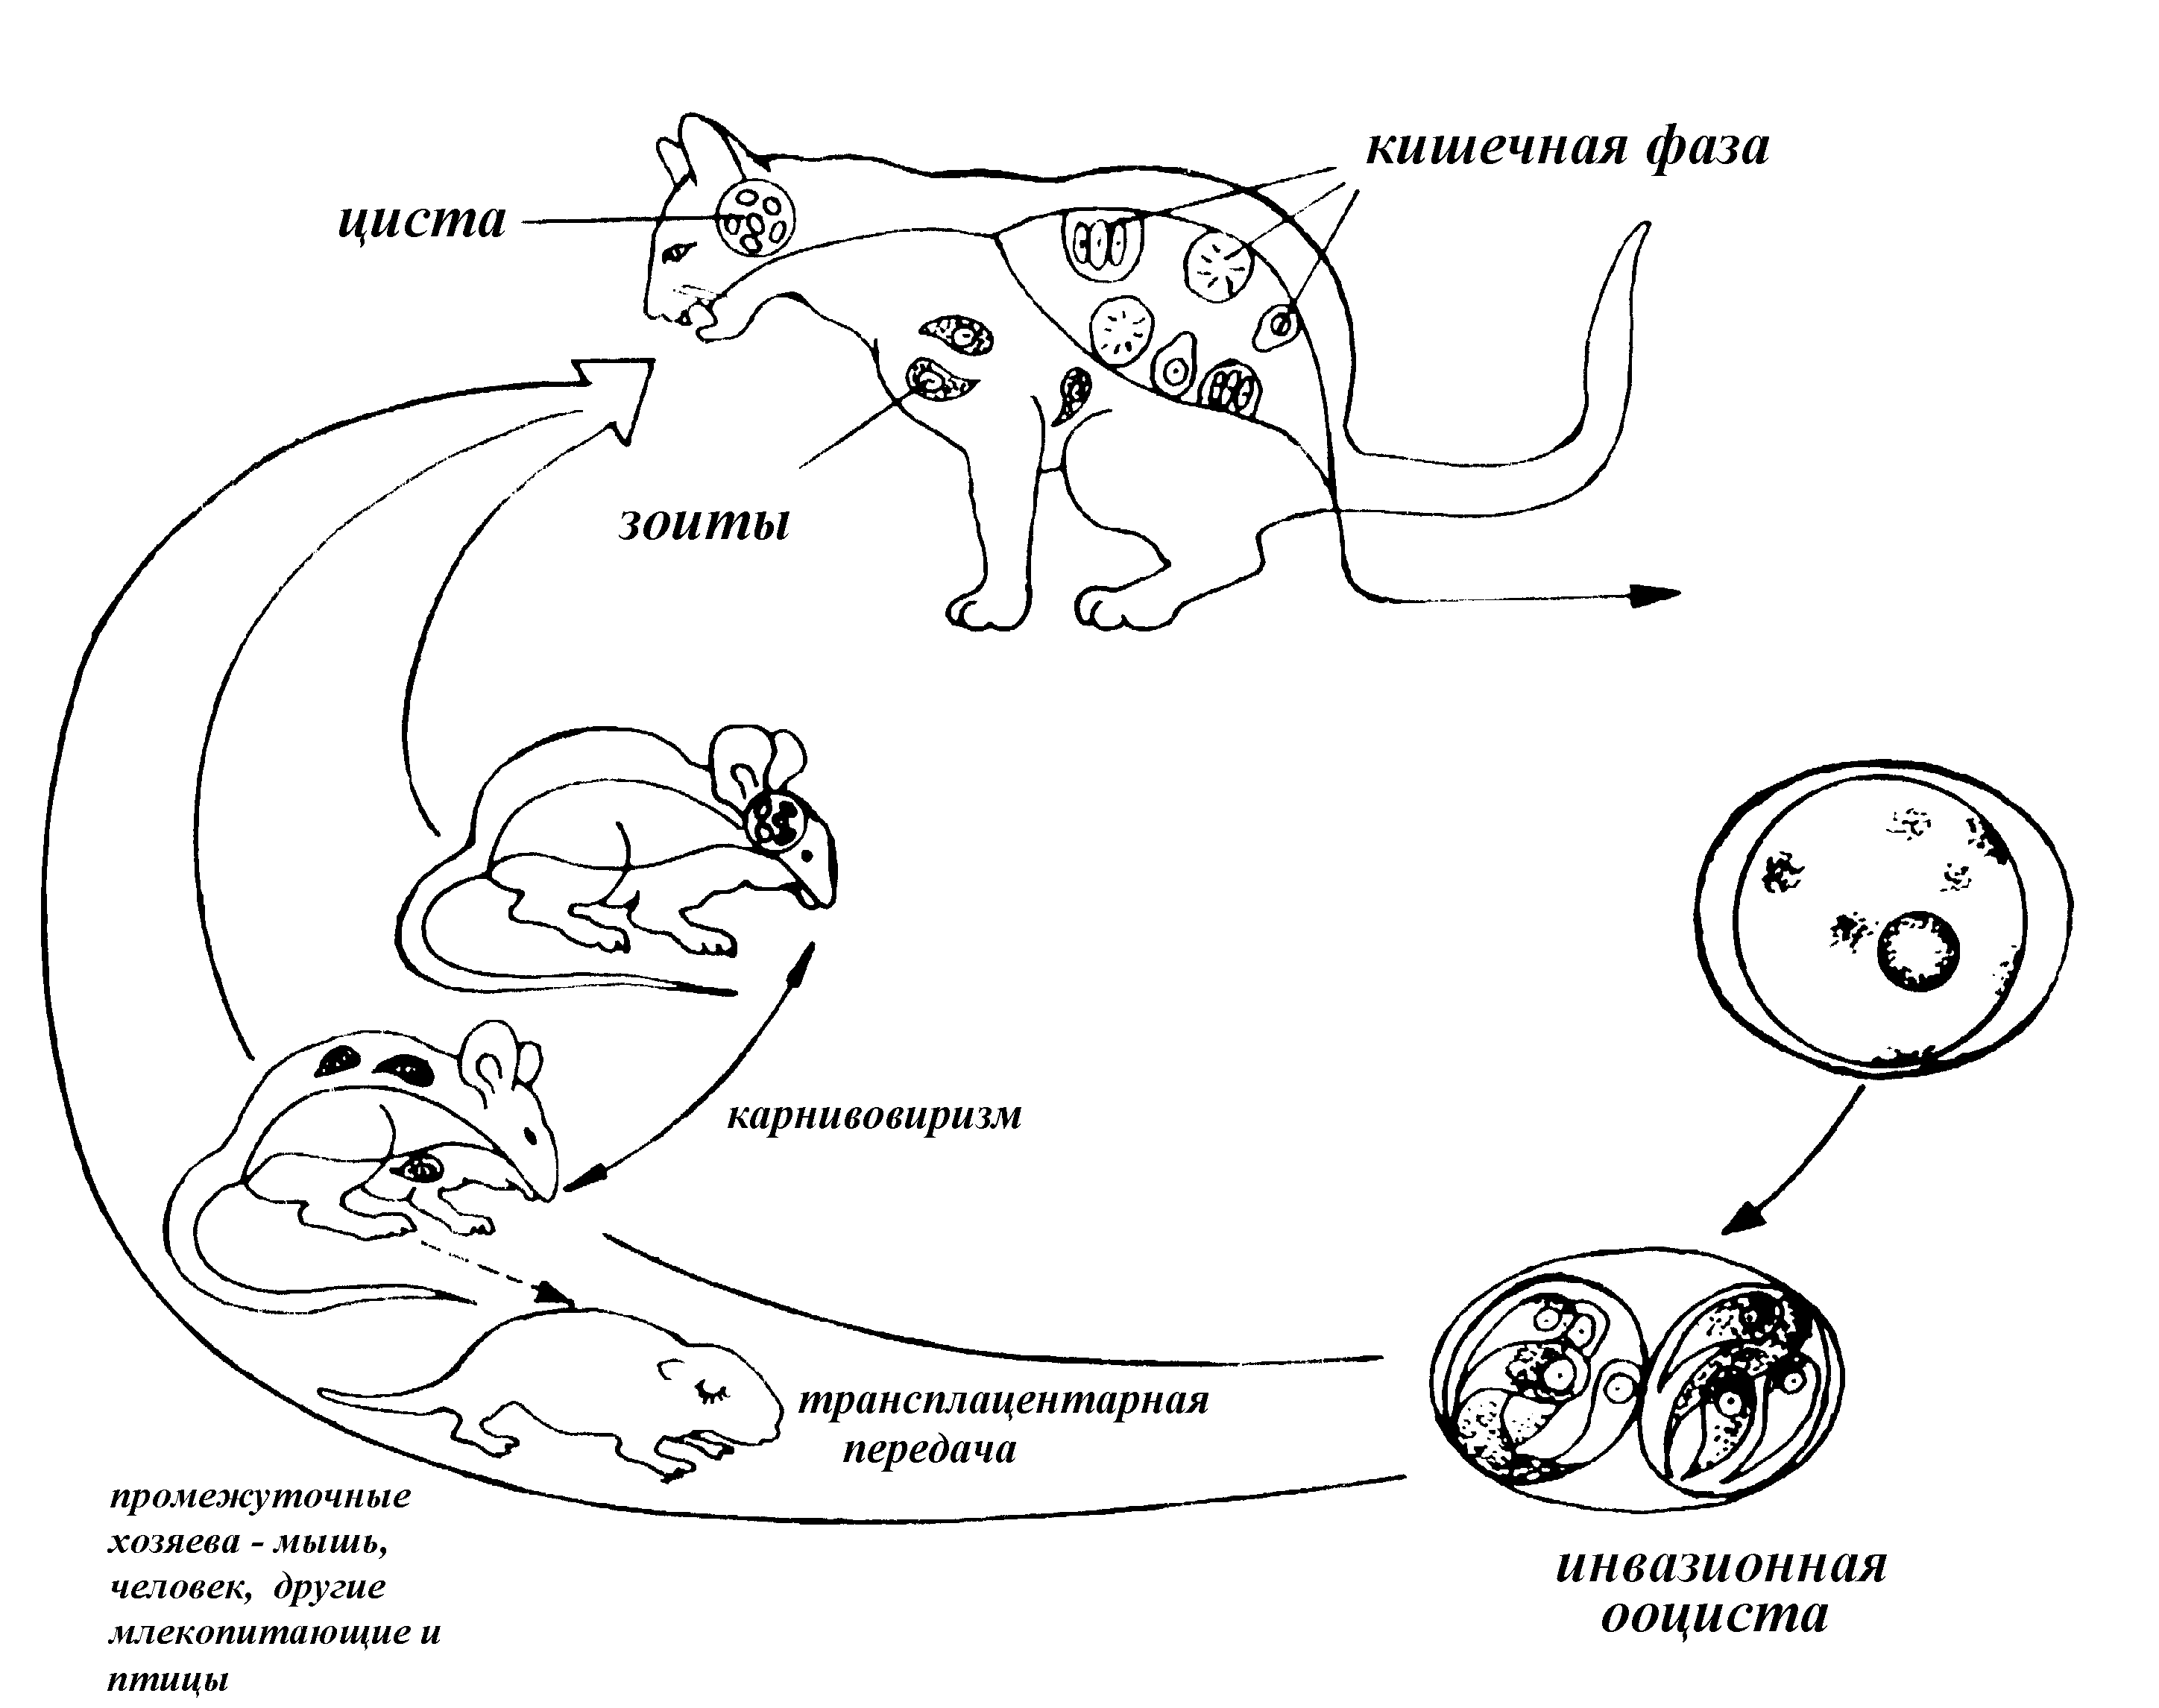 Может ли человек быть промежуточным хозяином. Жизненный цикл Toxoplasma gondii схема. Схема жизненного цикла развития токсоплазмы. Токсоплазмоз кошек жизненный цикл. Жизненный цикл малярийного токсоплазмы.